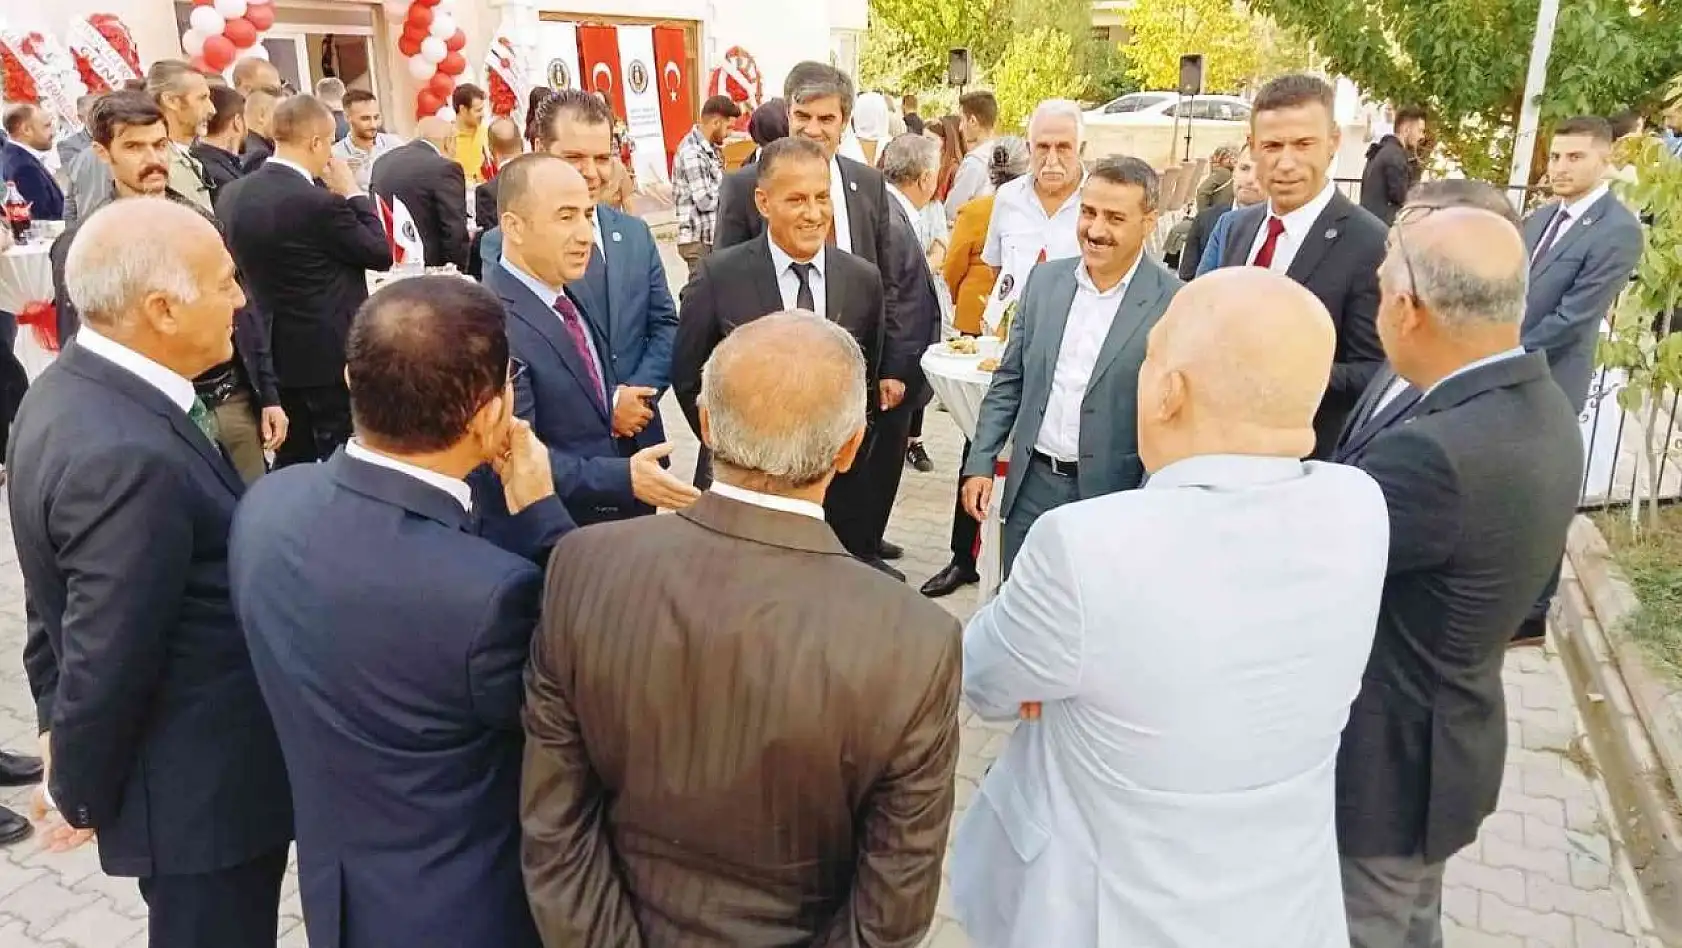 Tunceli'de EMŞAV temsilciliği açıldı